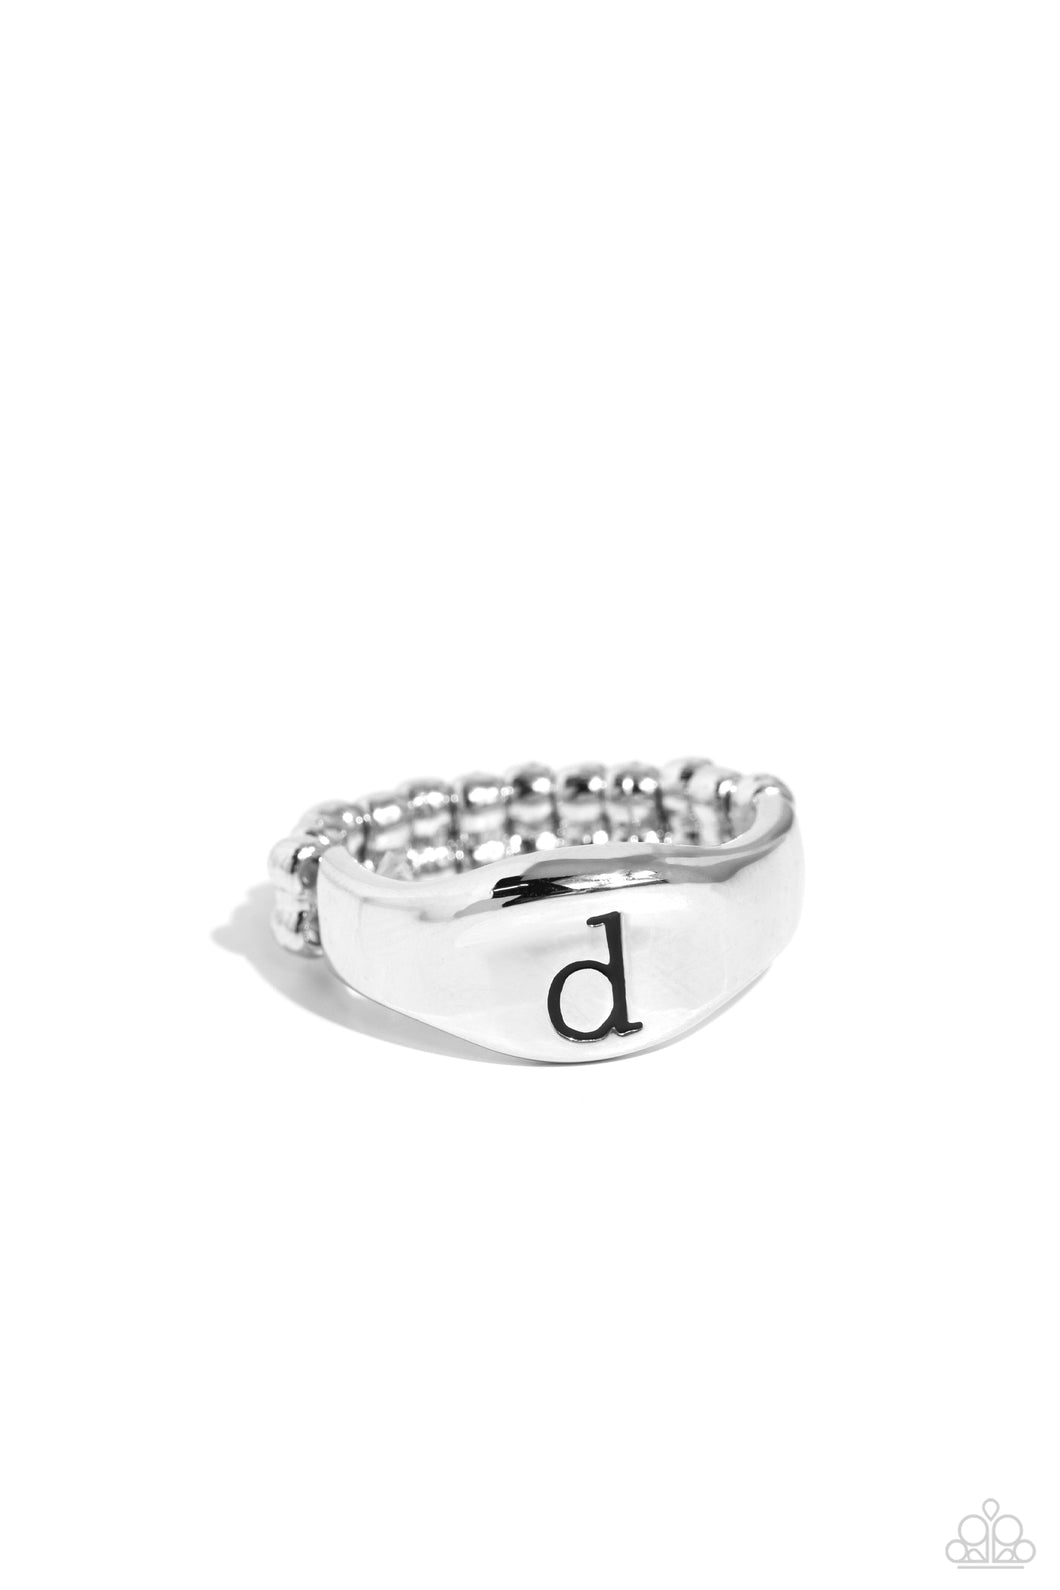 Monogram Memento - Silver - D Initial Ring